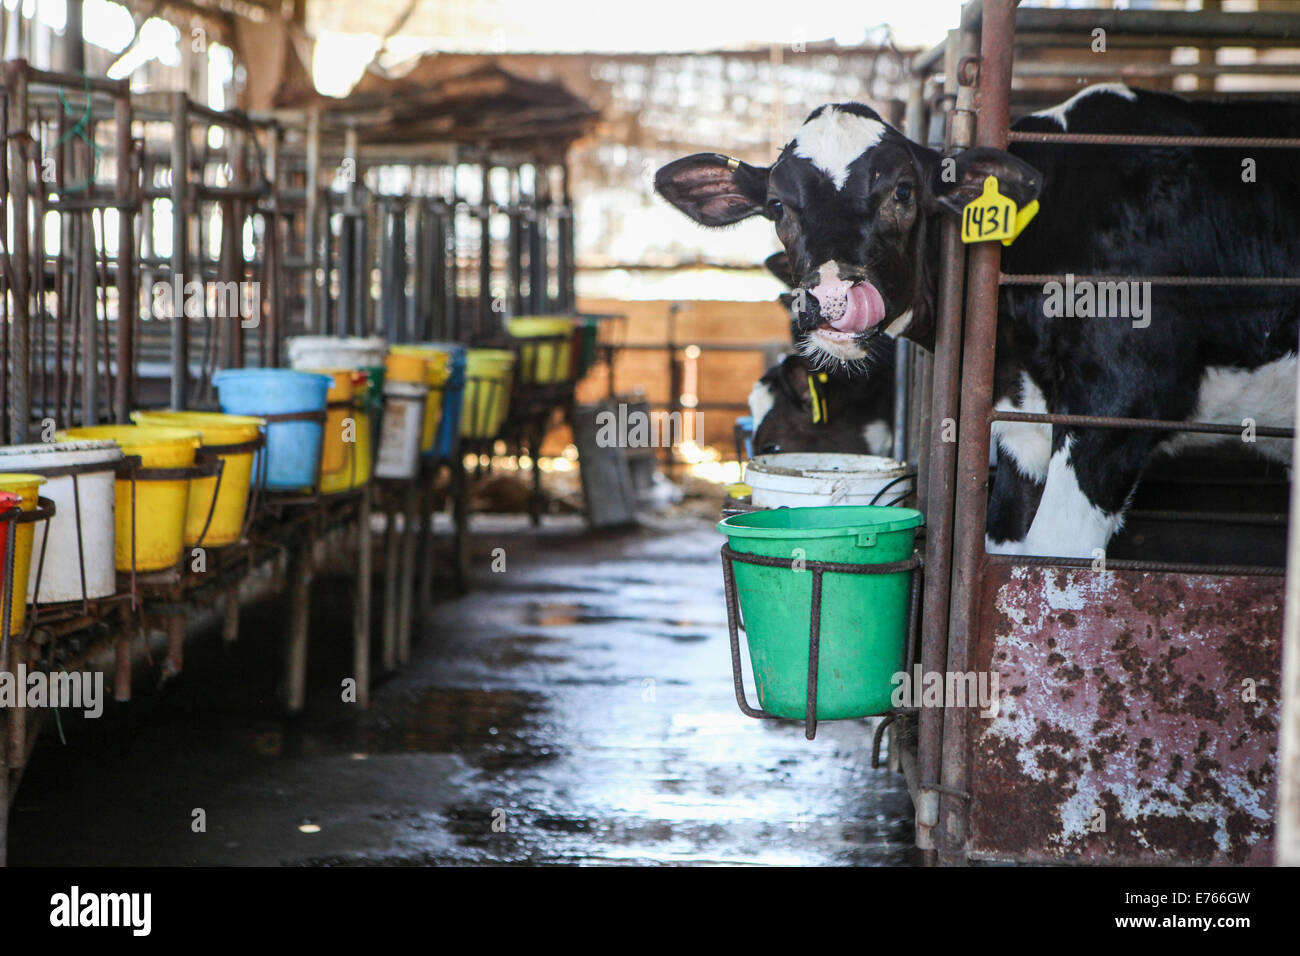 Les jeunes veaux dans un stylo à une ferme laitière. Photographié en Israël Banque D'Images